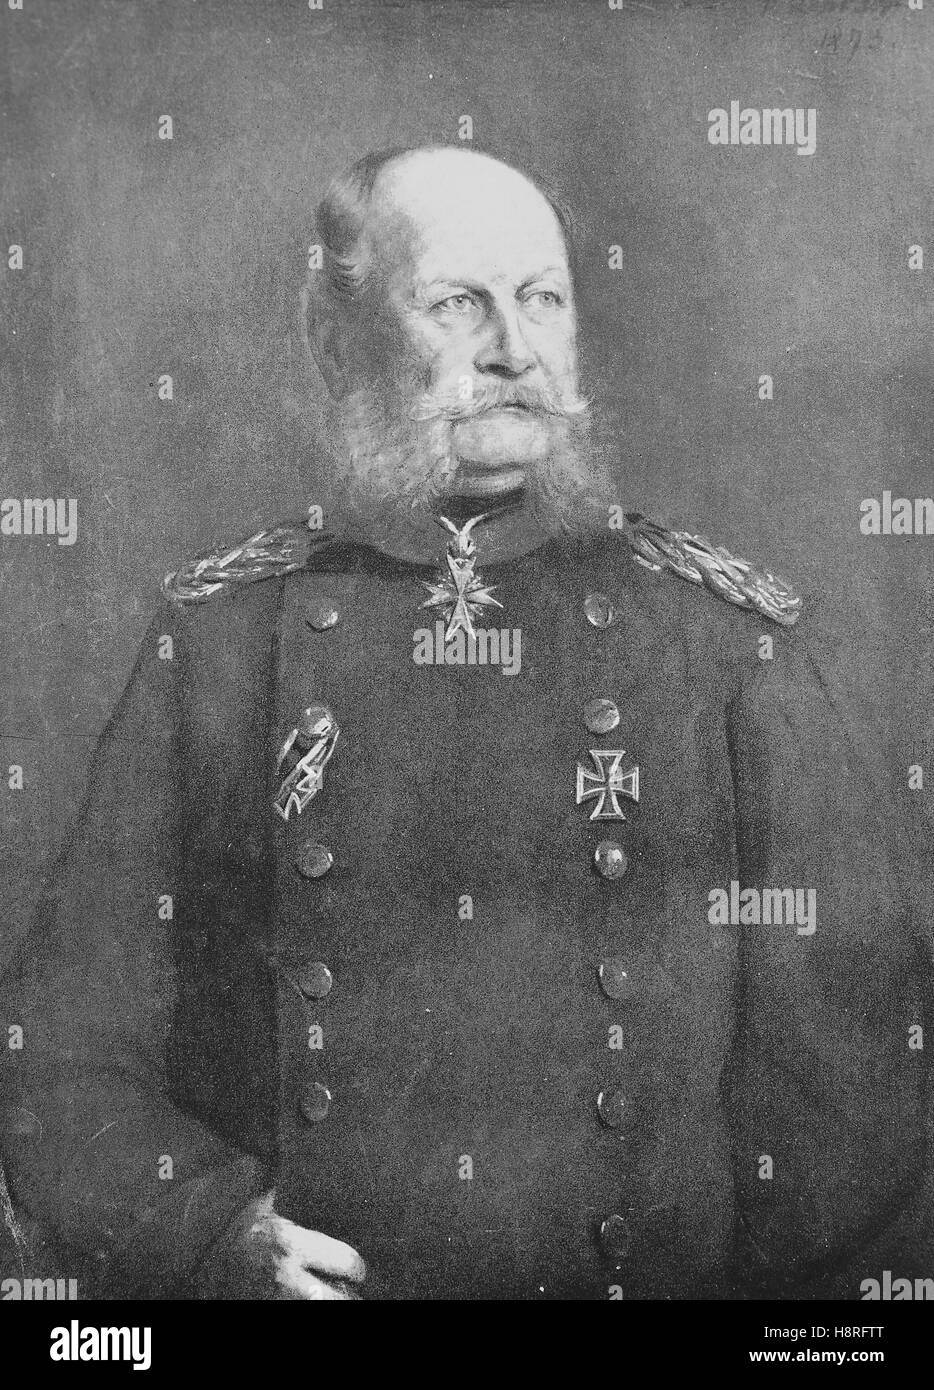 Guillermo I, o en alemán Wilhelm I[, William Frederick Louis, Wilhelm Friedrich Ludwig, de la casa de Hohenzollern fue el rey de Prusia y el primer emperador alemán Foto de stock